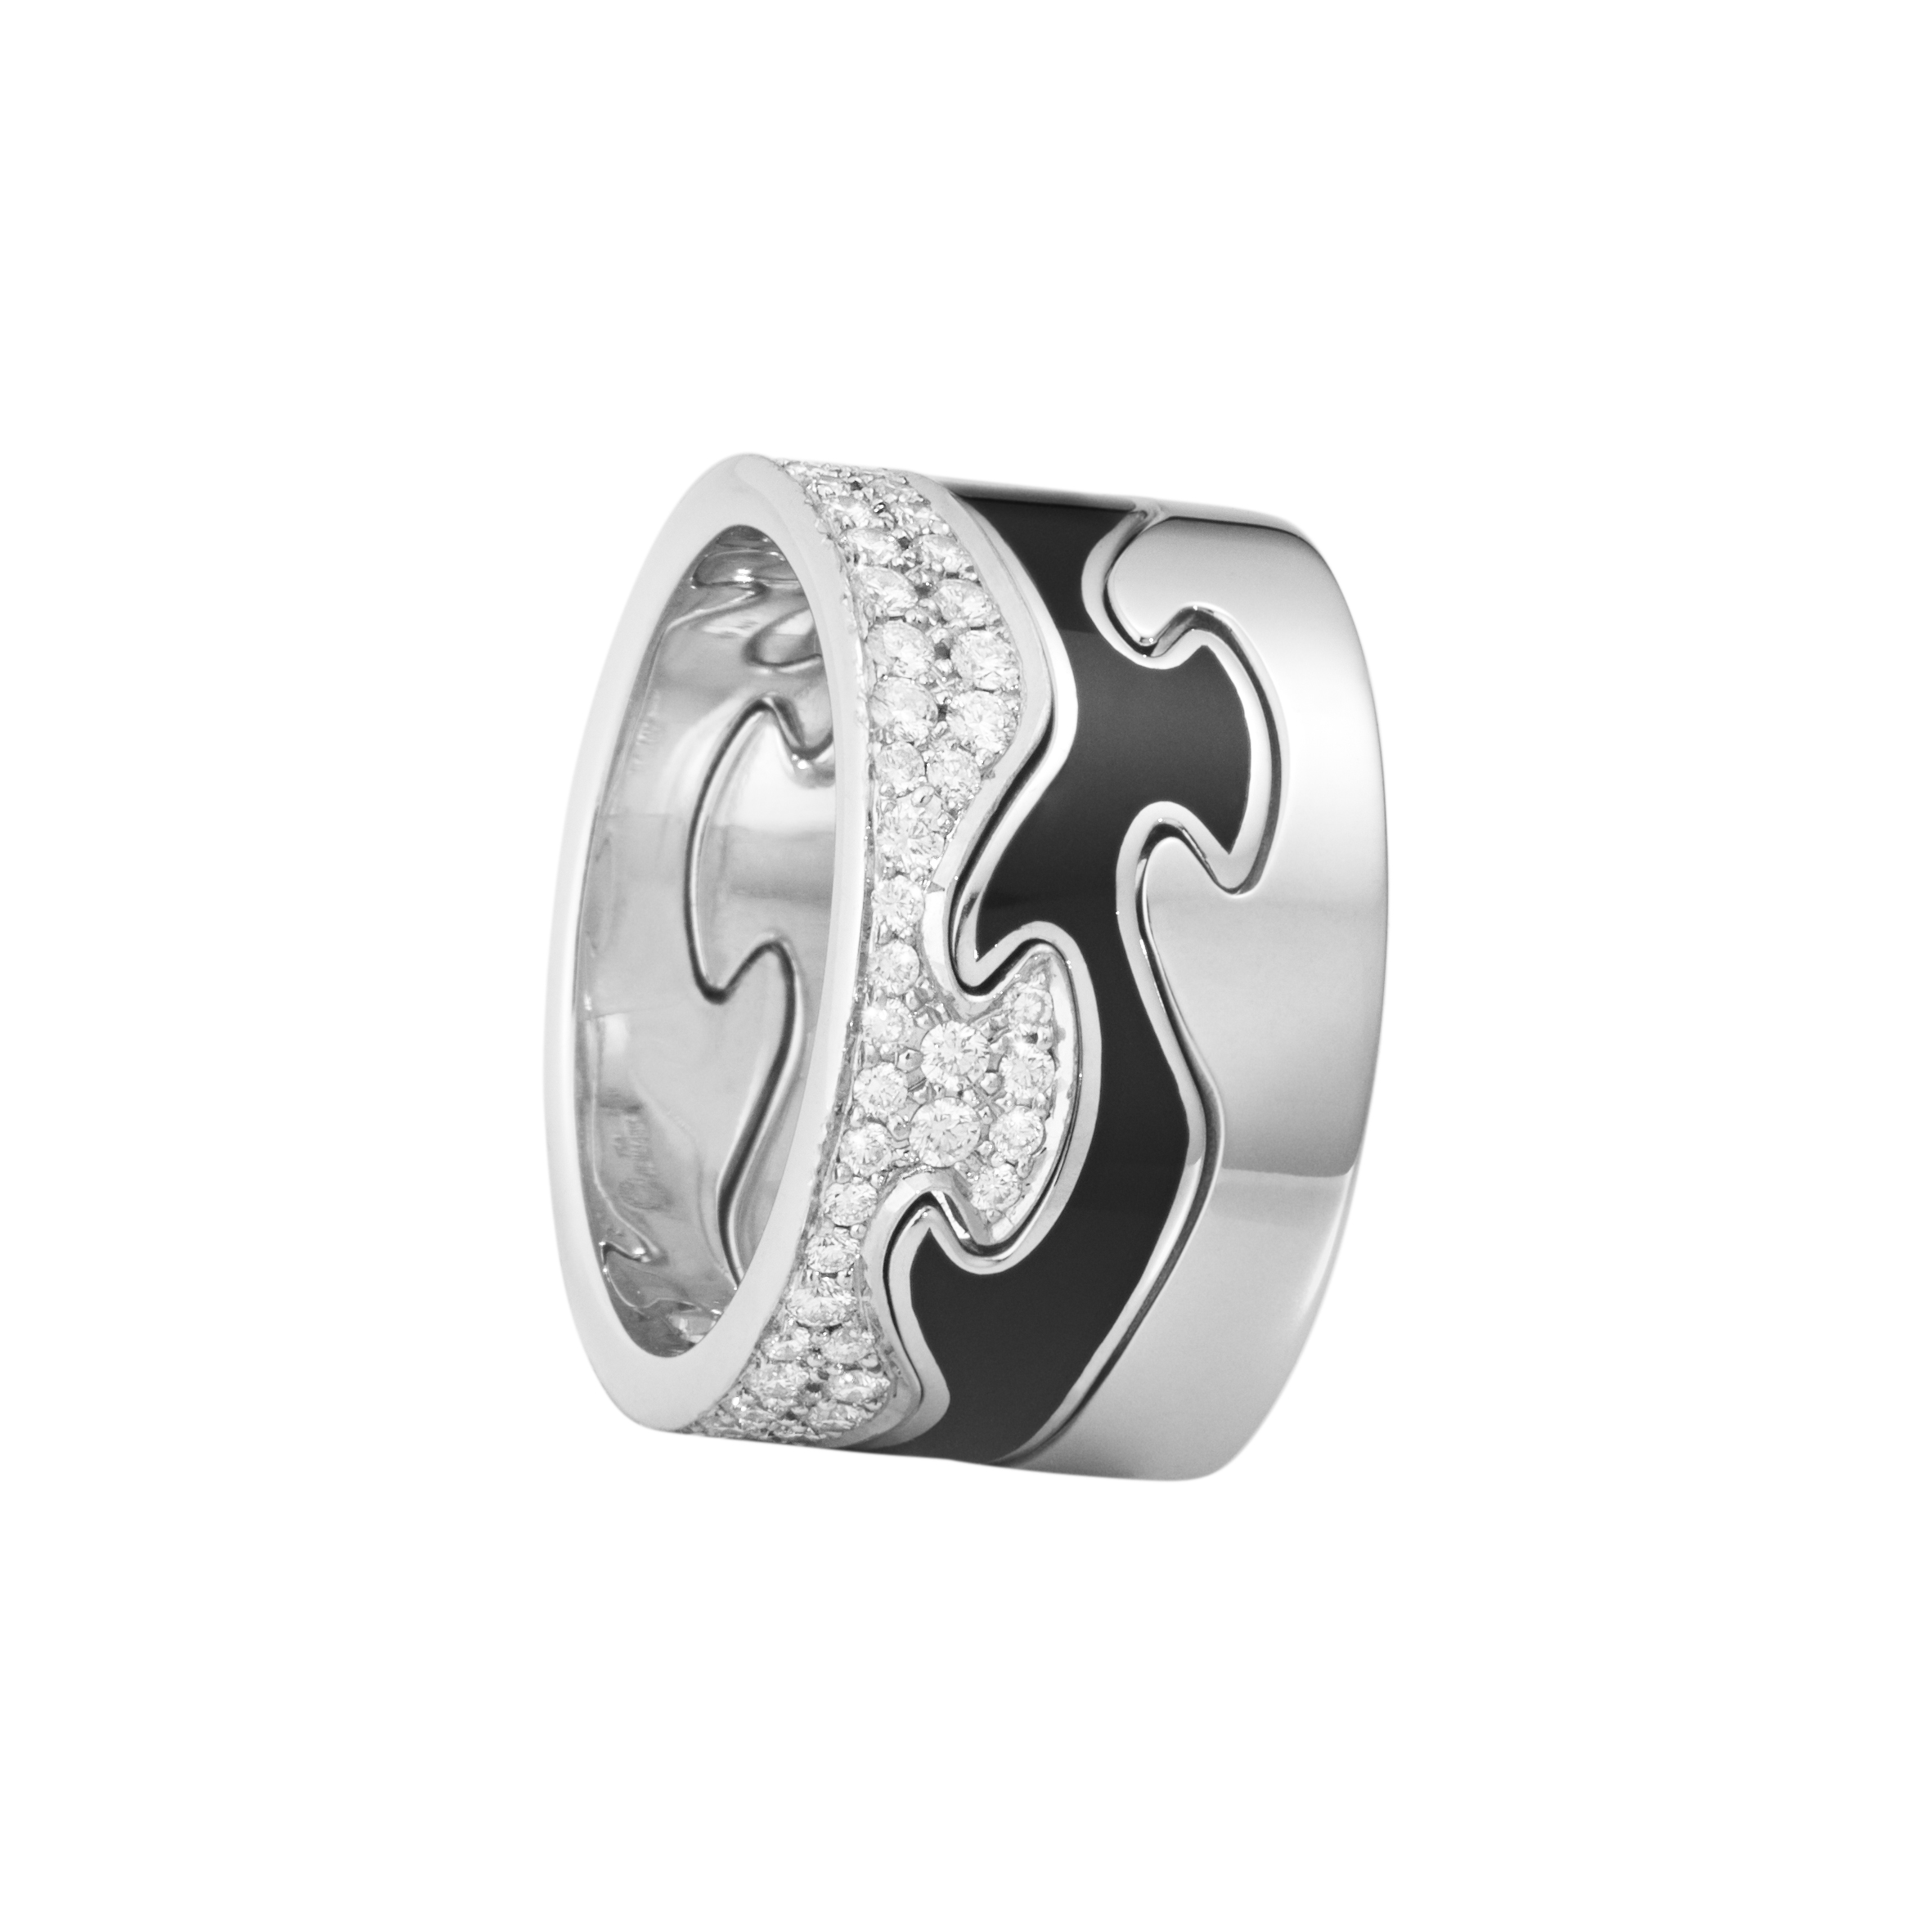 乔治杰生FUSION系列三件式戒指，18K白金镶嵌钻石、HYCERAM黑色陶瓷，21万9,000元起。图／乔治杰生提供